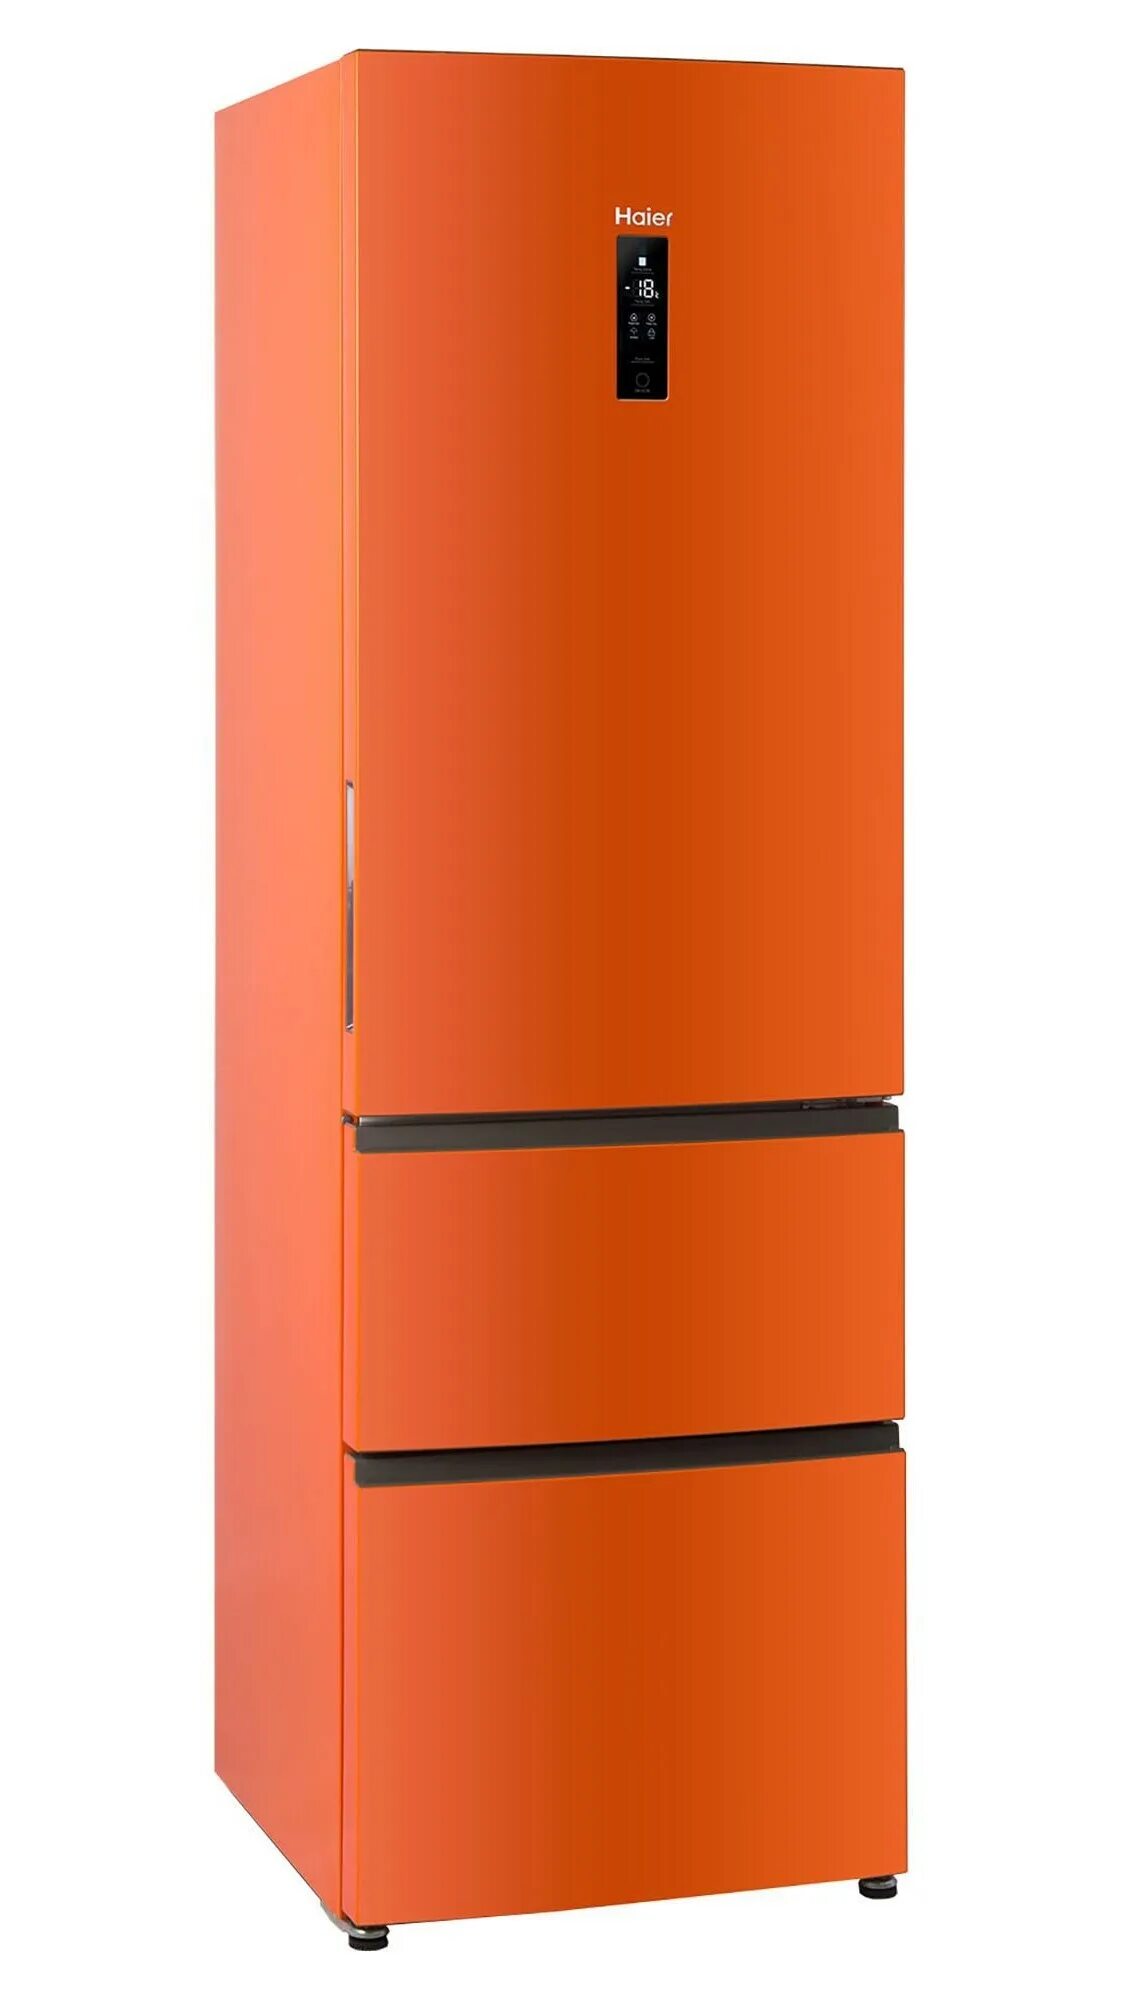 Хайер купить днс. Холодильник Haier a2f635comv. Холодильник Haier a2f635crmv. Холодильник Haier c2f636corg оранжевый. Холодильник Liebherr CNNO 4313 оранжевый.